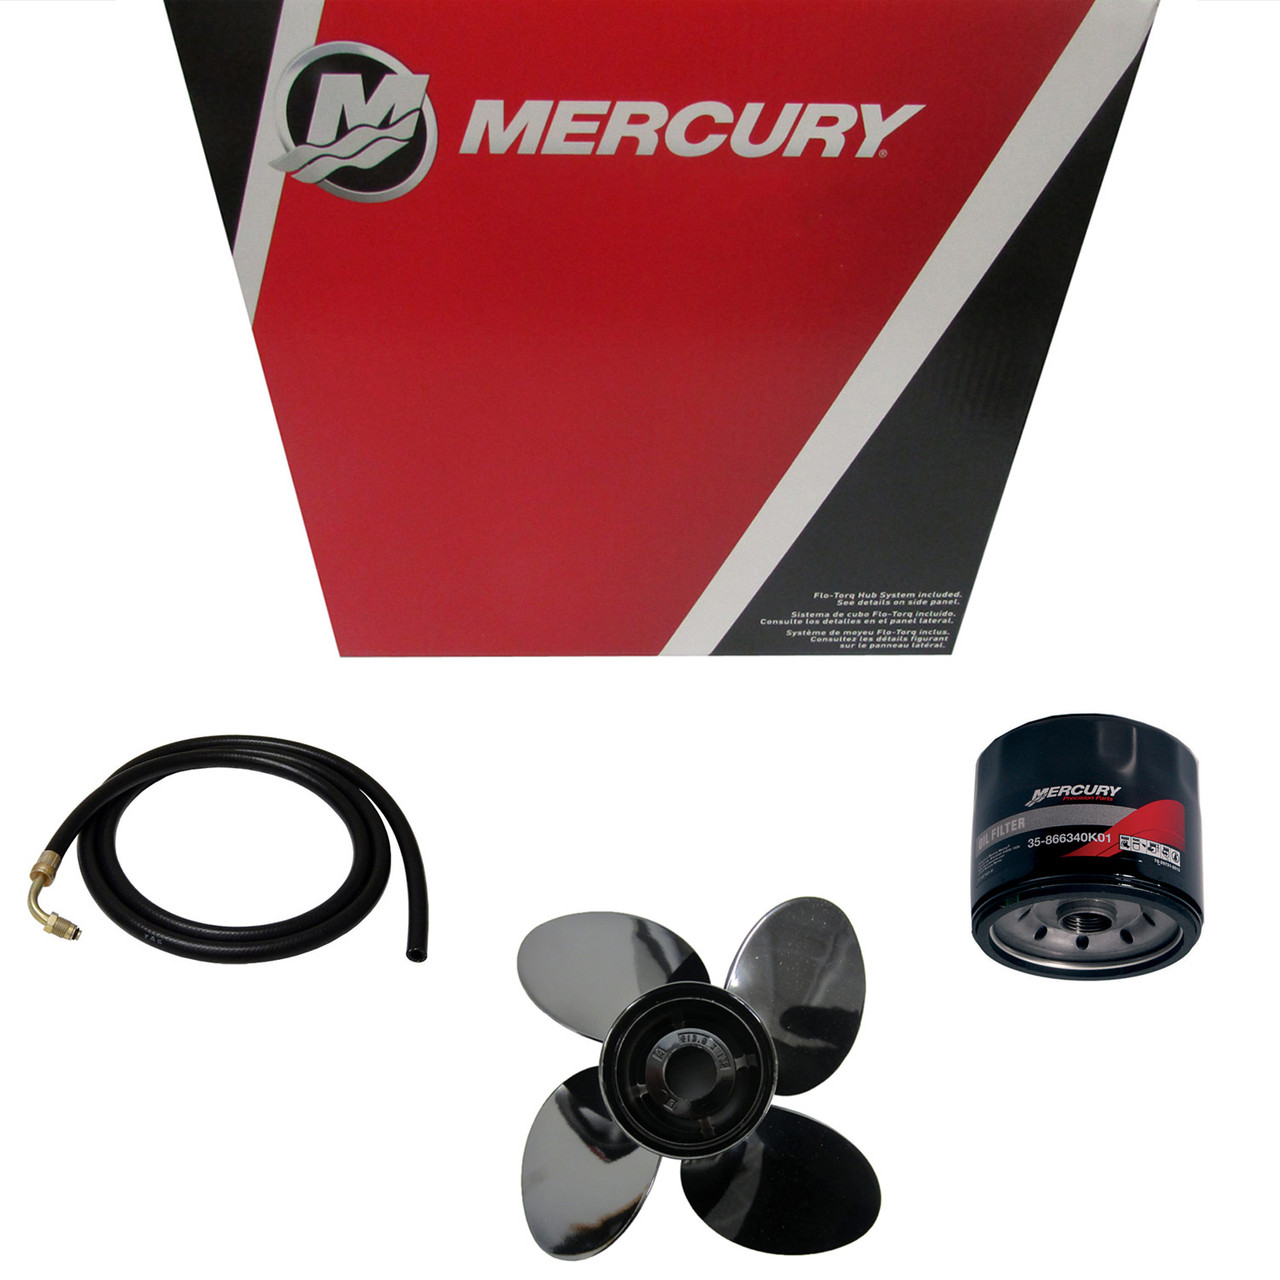 Mercury Marine / Mercruiser New OEM Driveshaft, 45-881938